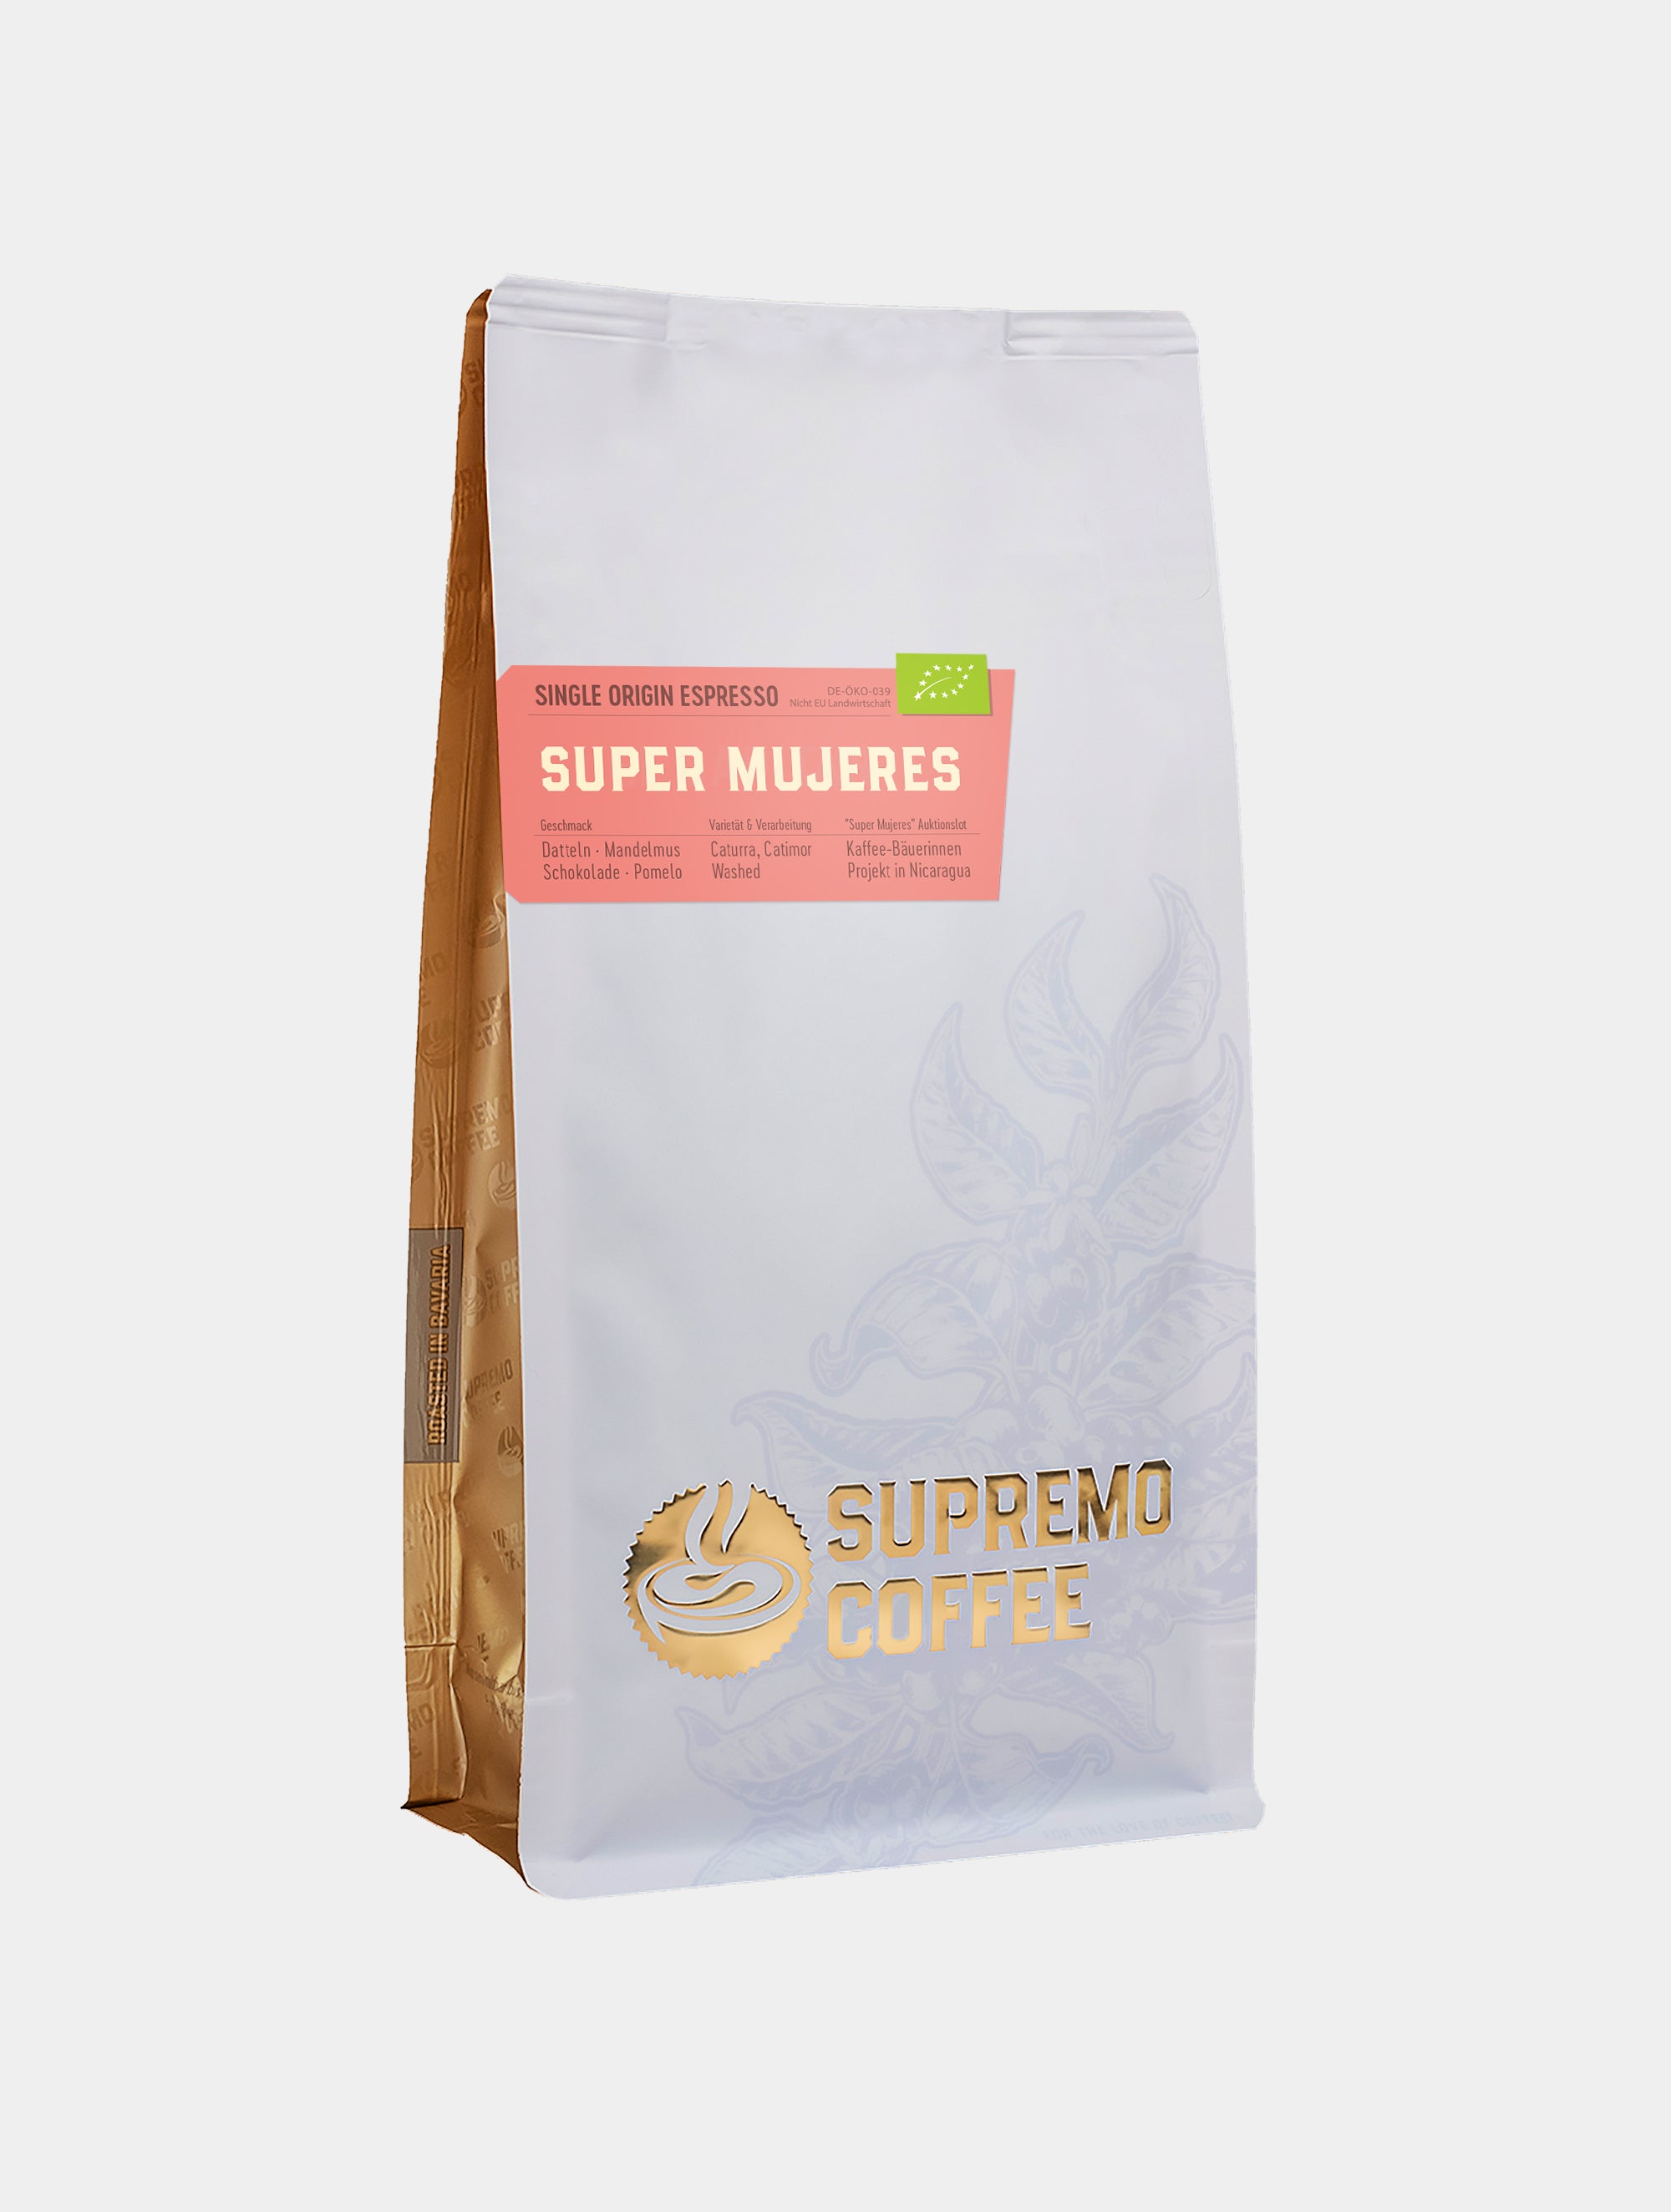 Supre Mujeres Espresso | SUPREMO Coffee